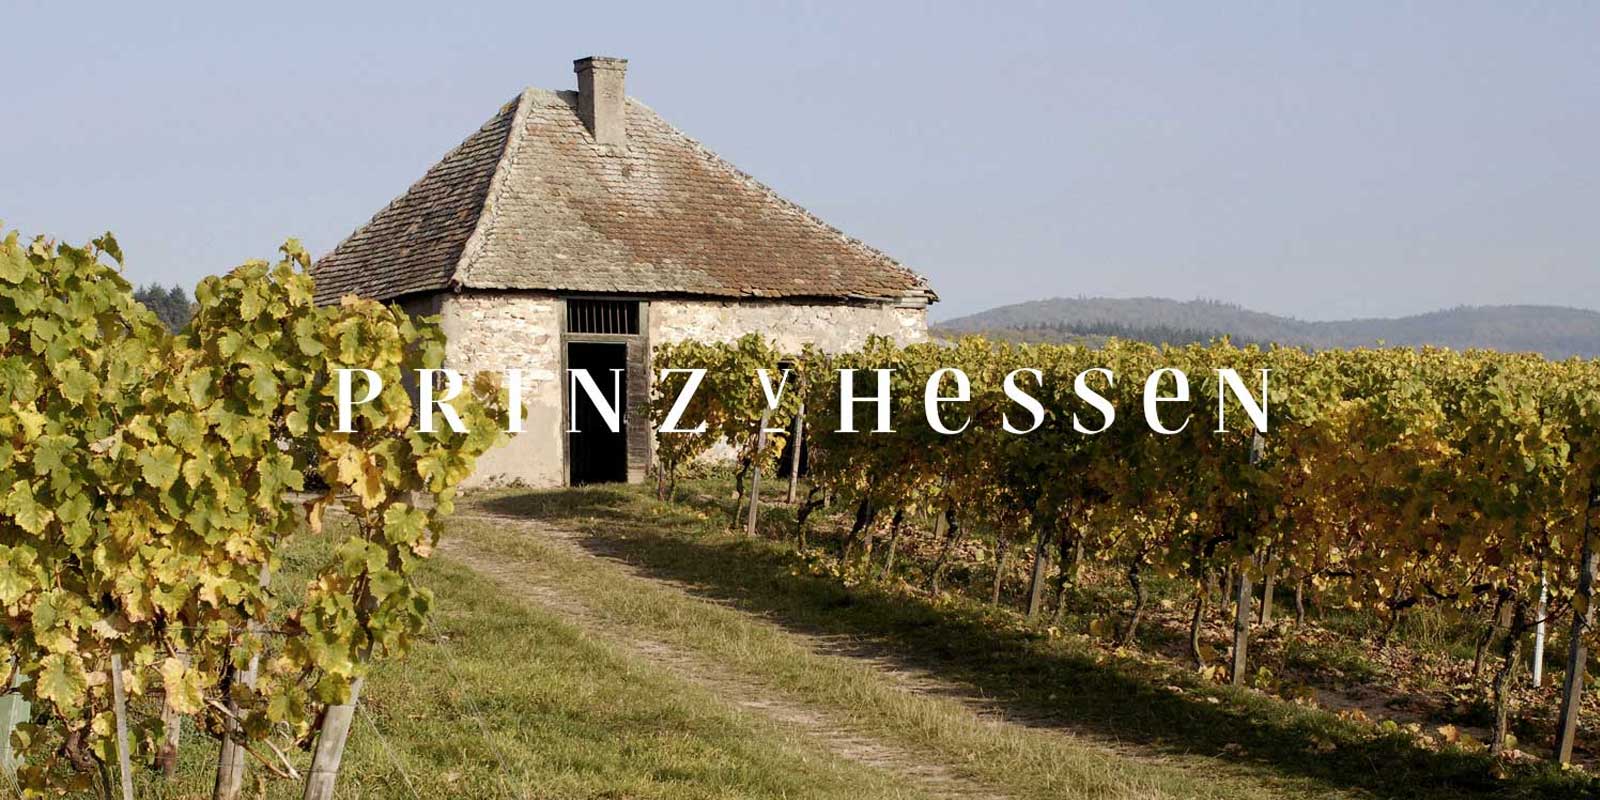 Vinarija Prince of Hesse - vinska regija Rheingau Vinarija PRINZ VON HESSEN u Johannisbergu u Rheingauu jedan je od istaknutih proizvodaca rizlinga u Njemackoj i jedan je od osnivaca VDP-a regionalnog udruzenja Rheingau. Brojna priznanja u zemlji i inostranstvu odrazavaju vinariju PRINZ VON HESSEN koja je na vrhunskom nivou. Vina i pjenusava vina vinarije PRINZ VON HESSEN osvojila su mnoga priznanja i visoka medunarodna priznanja.